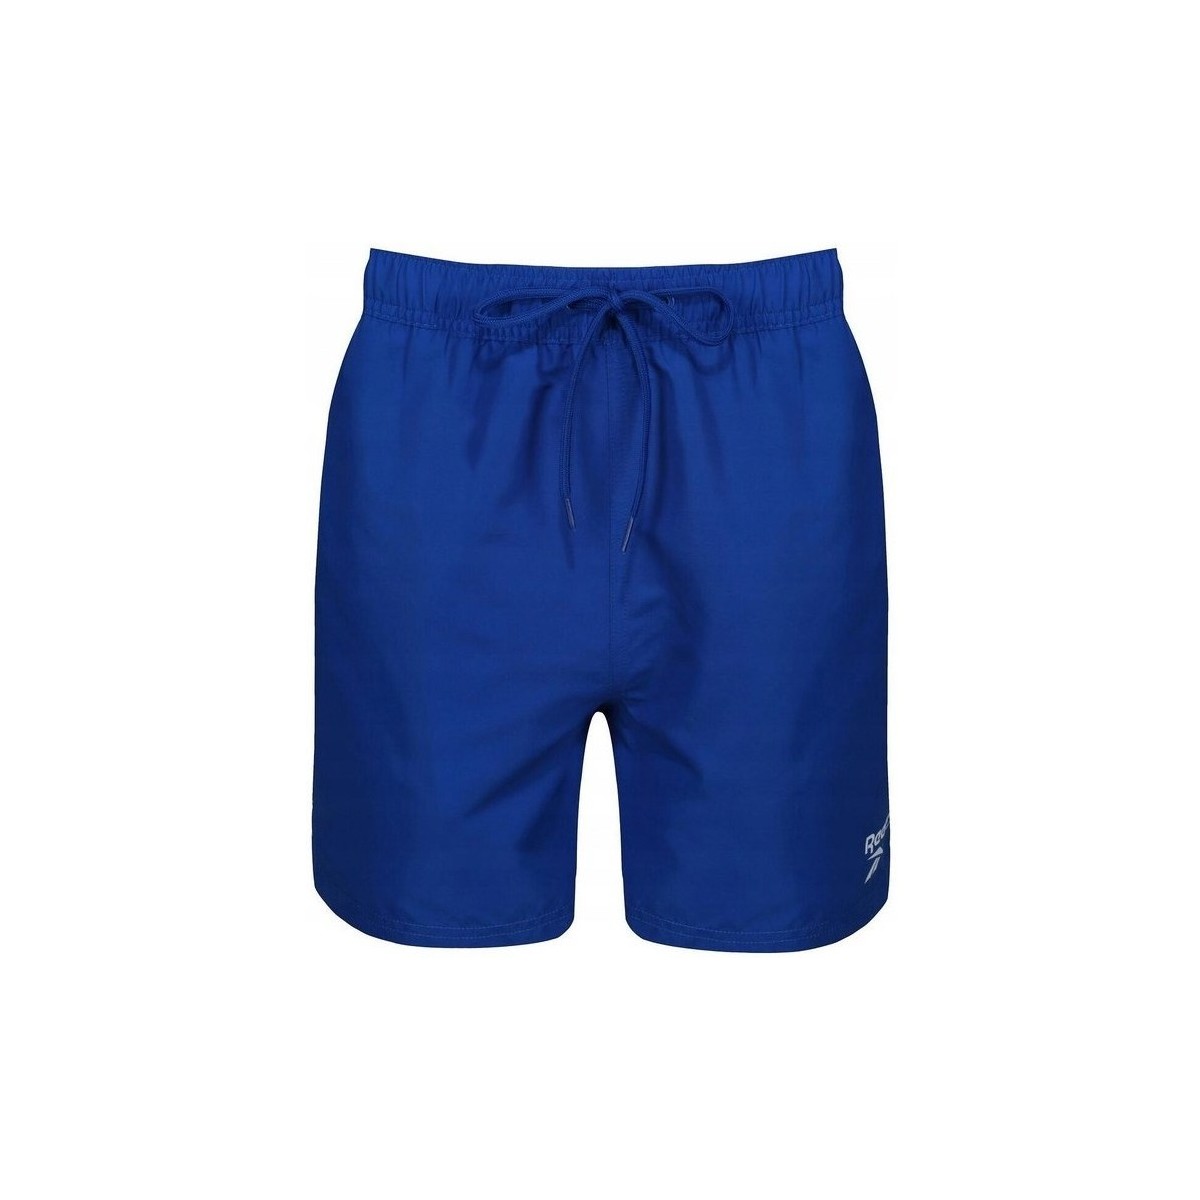 Textil Muži Tříčtvrteční kalhoty Reebok Sport Swim Short Yale Tmavě modrá